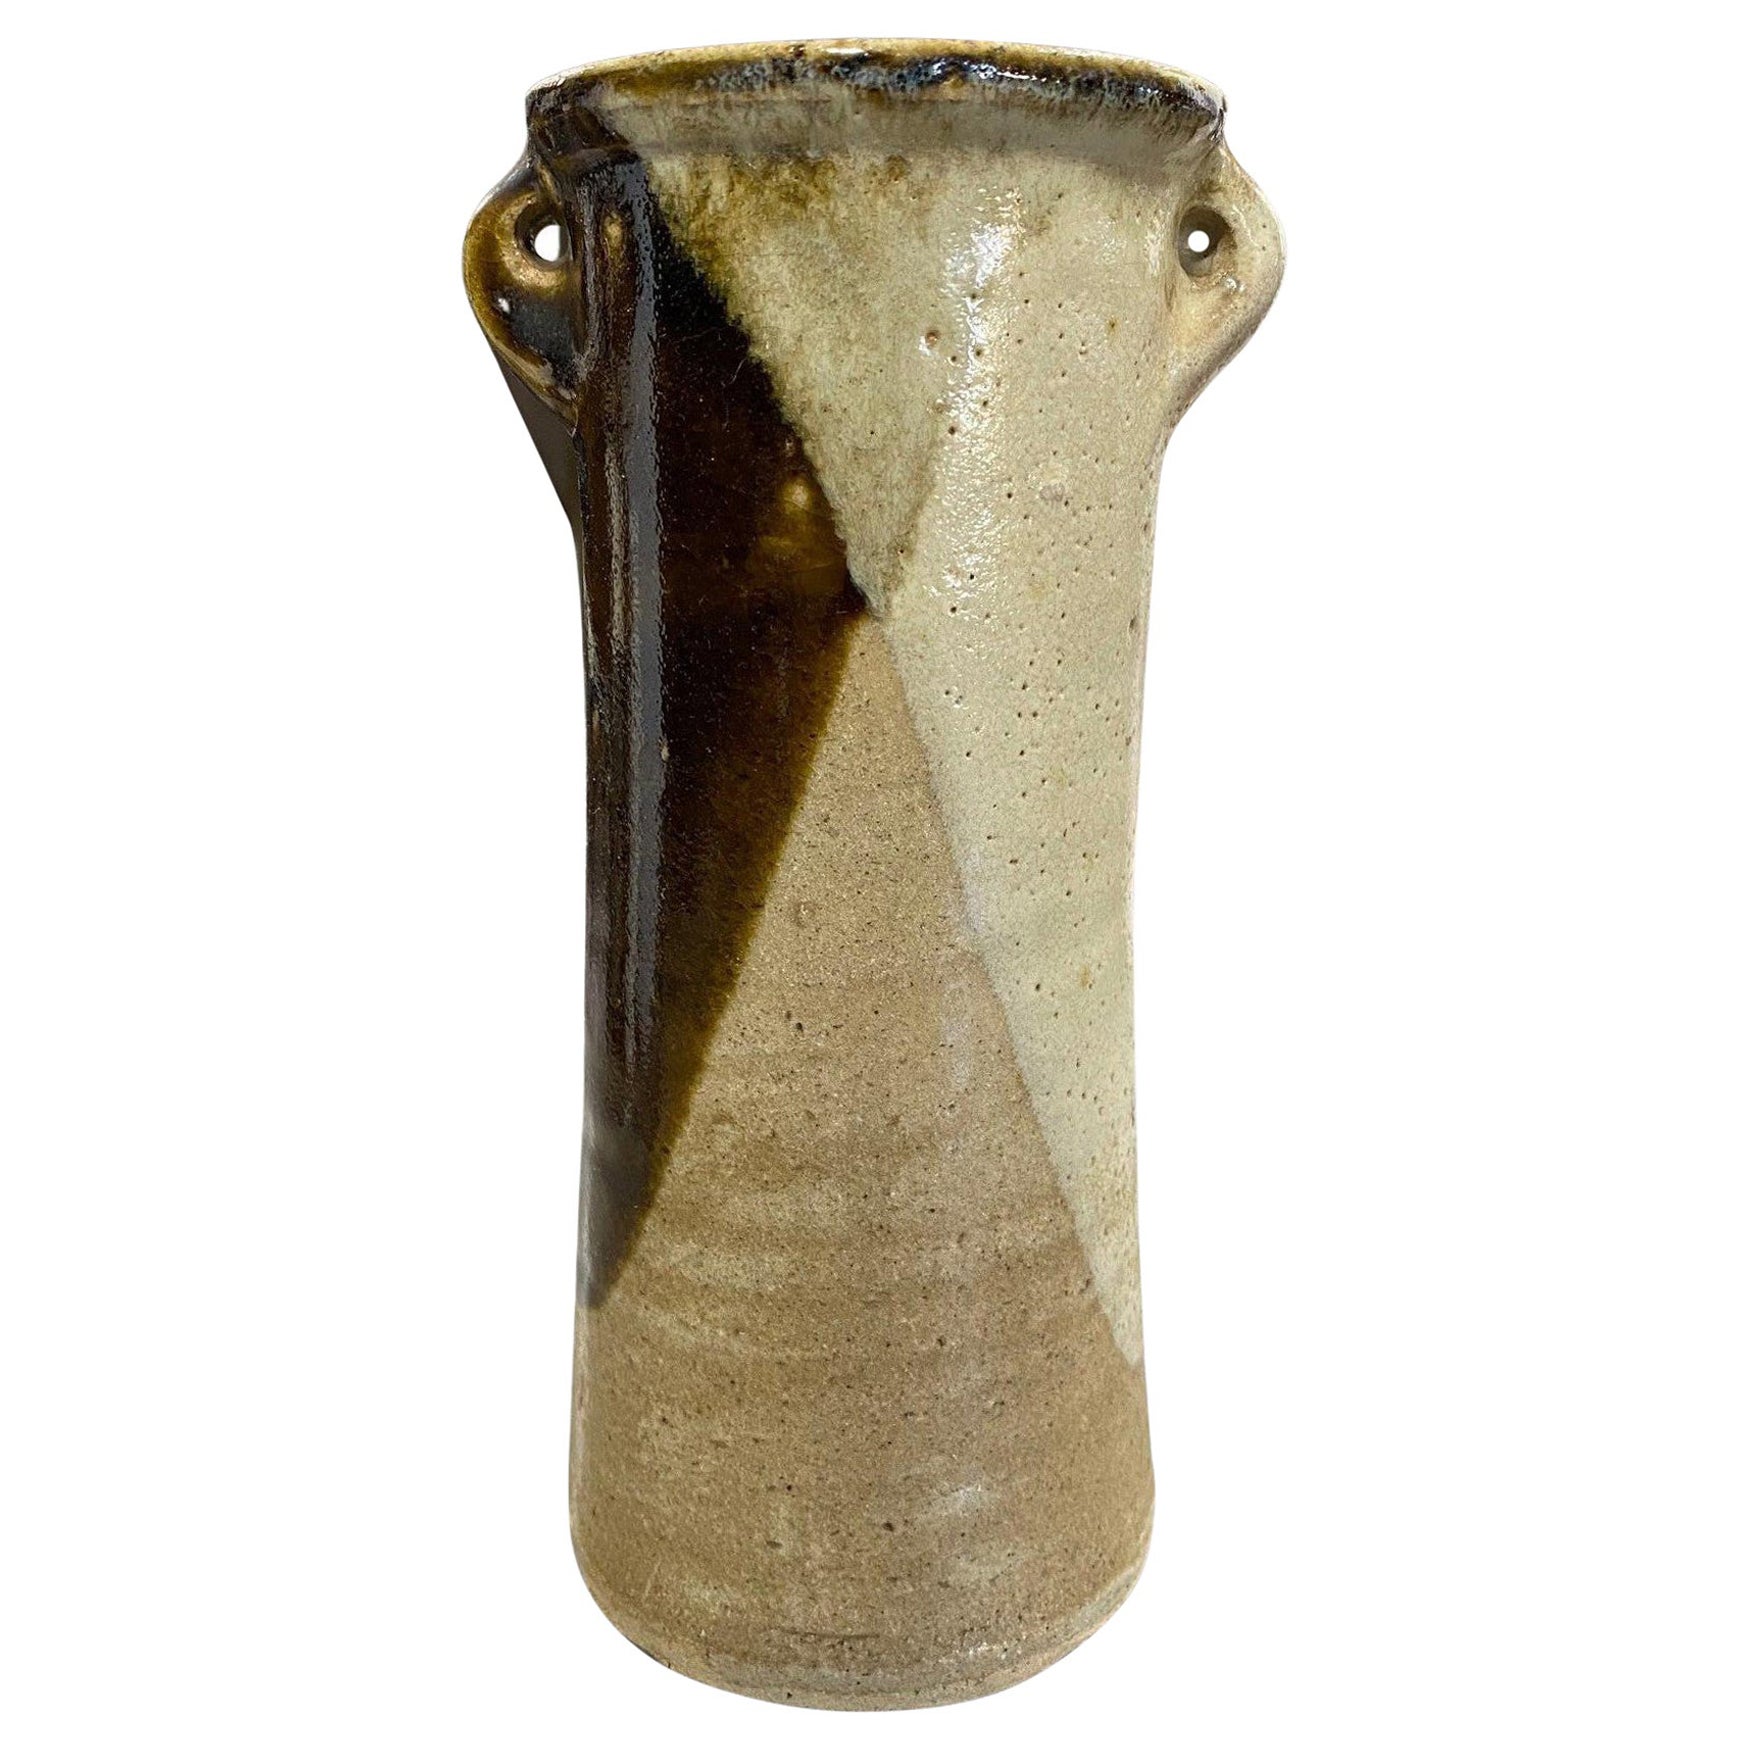 Shoji Hamada Japanese Earth-Toned Glazed Vase with Original Signed Sealed Box